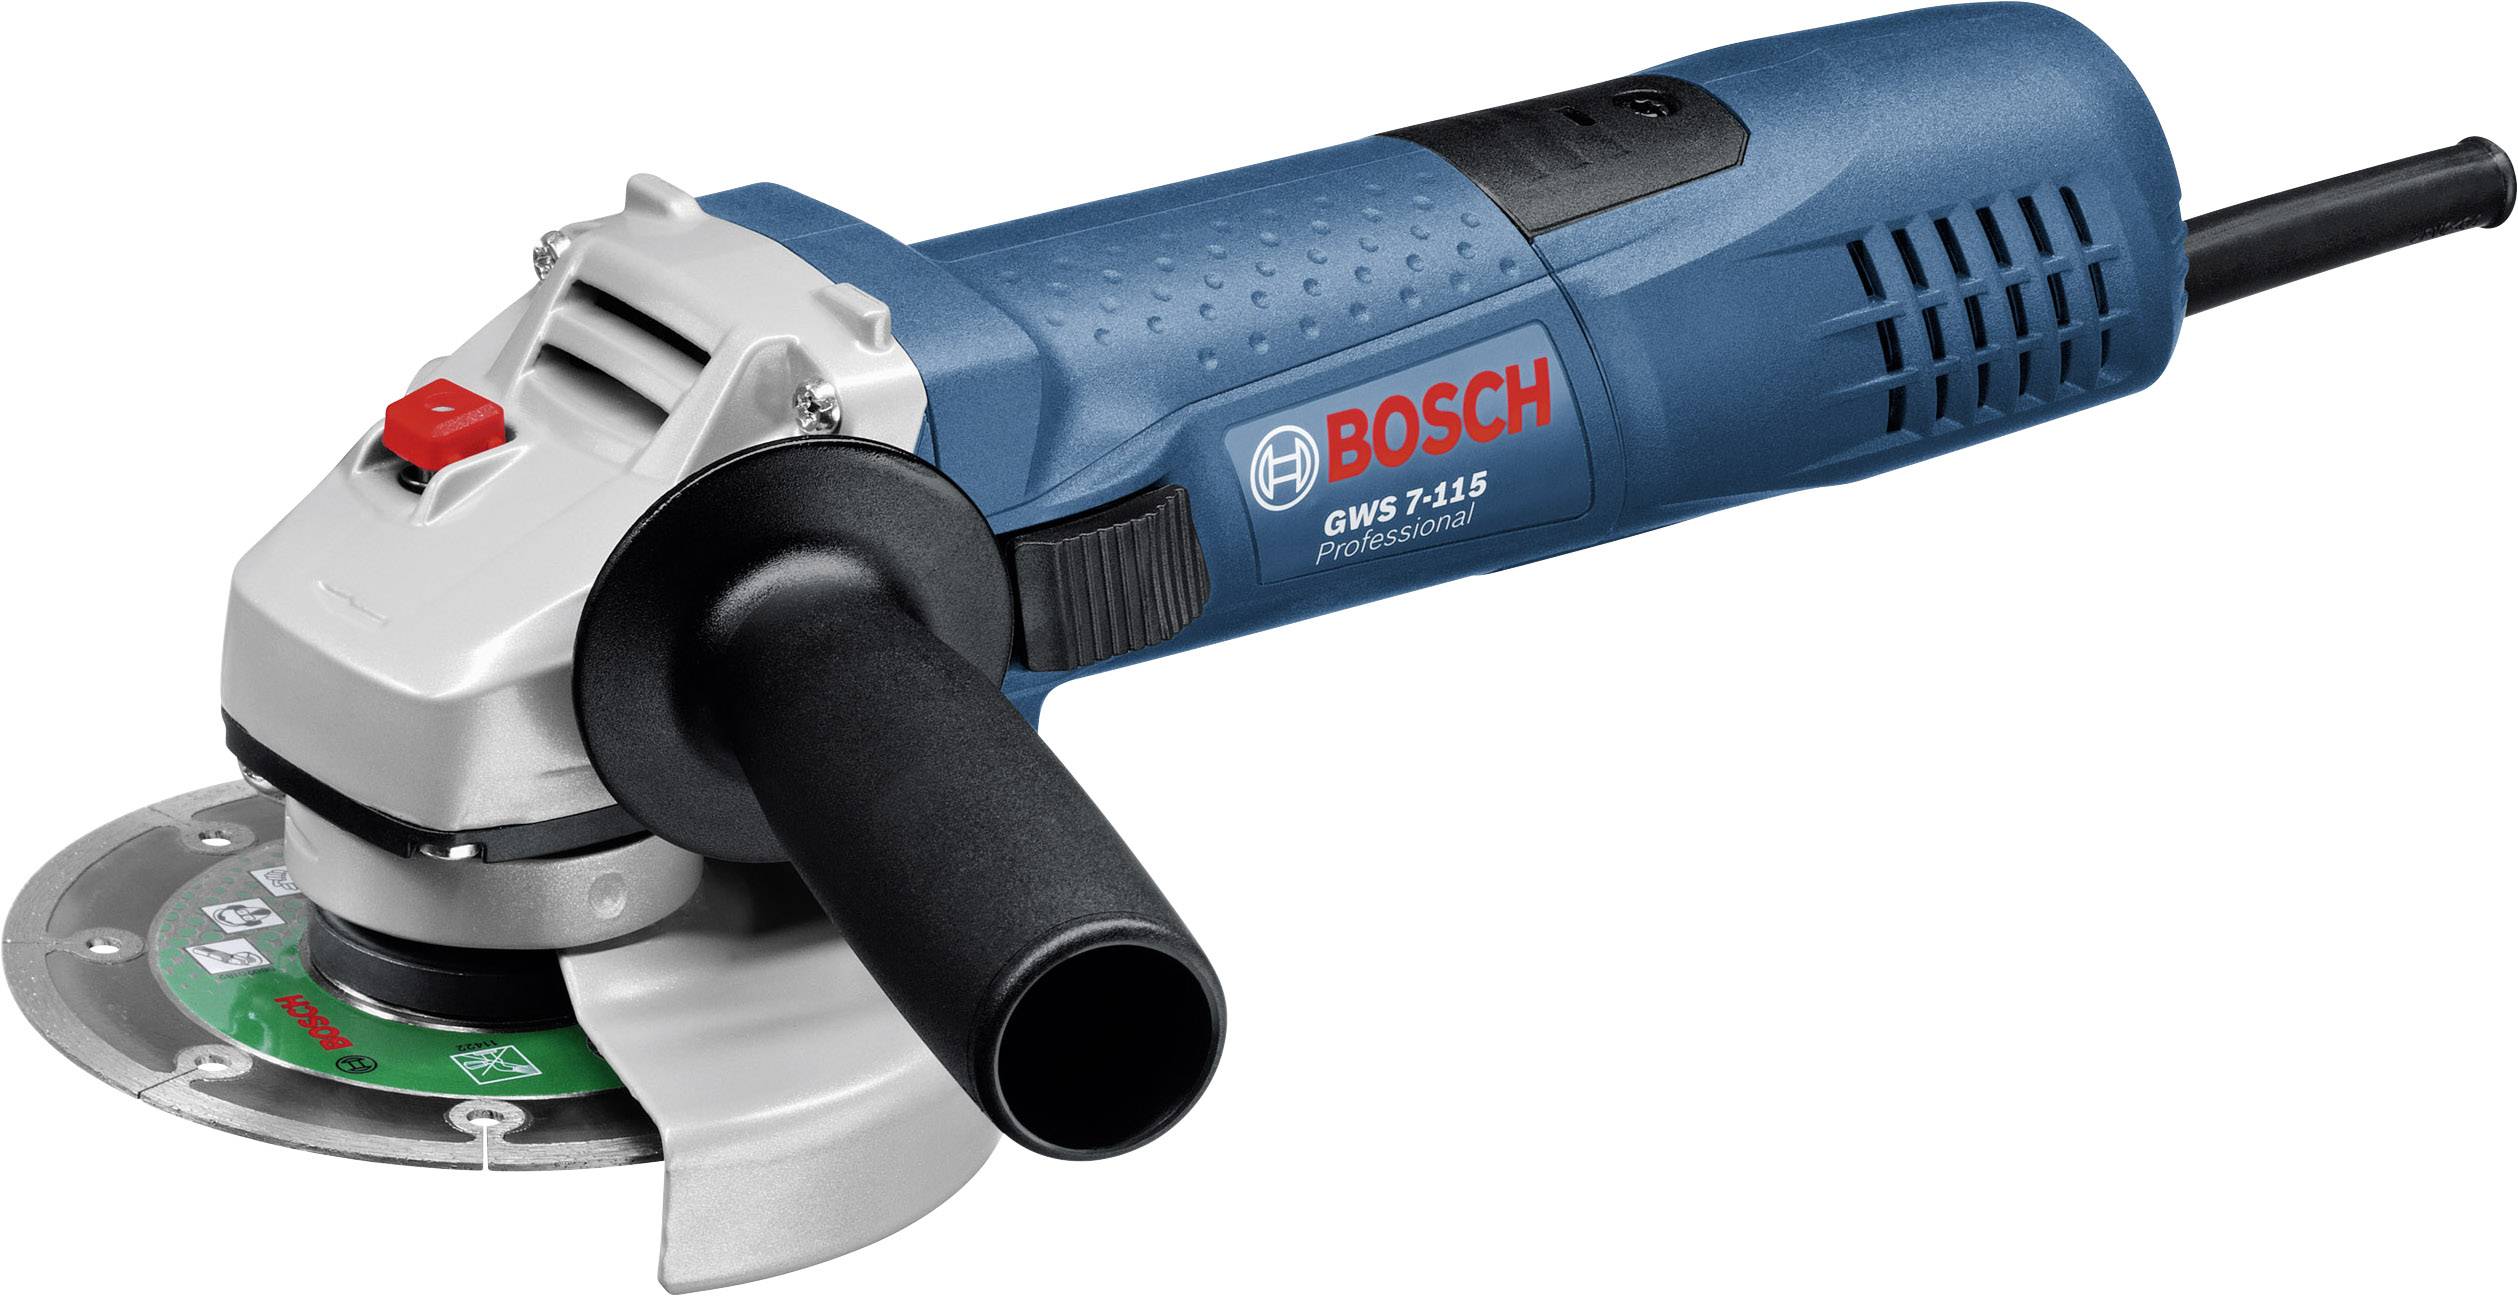 Bosch Professional Gws 7 115 0601388106 Angle Grinder 115 Mm 720 W